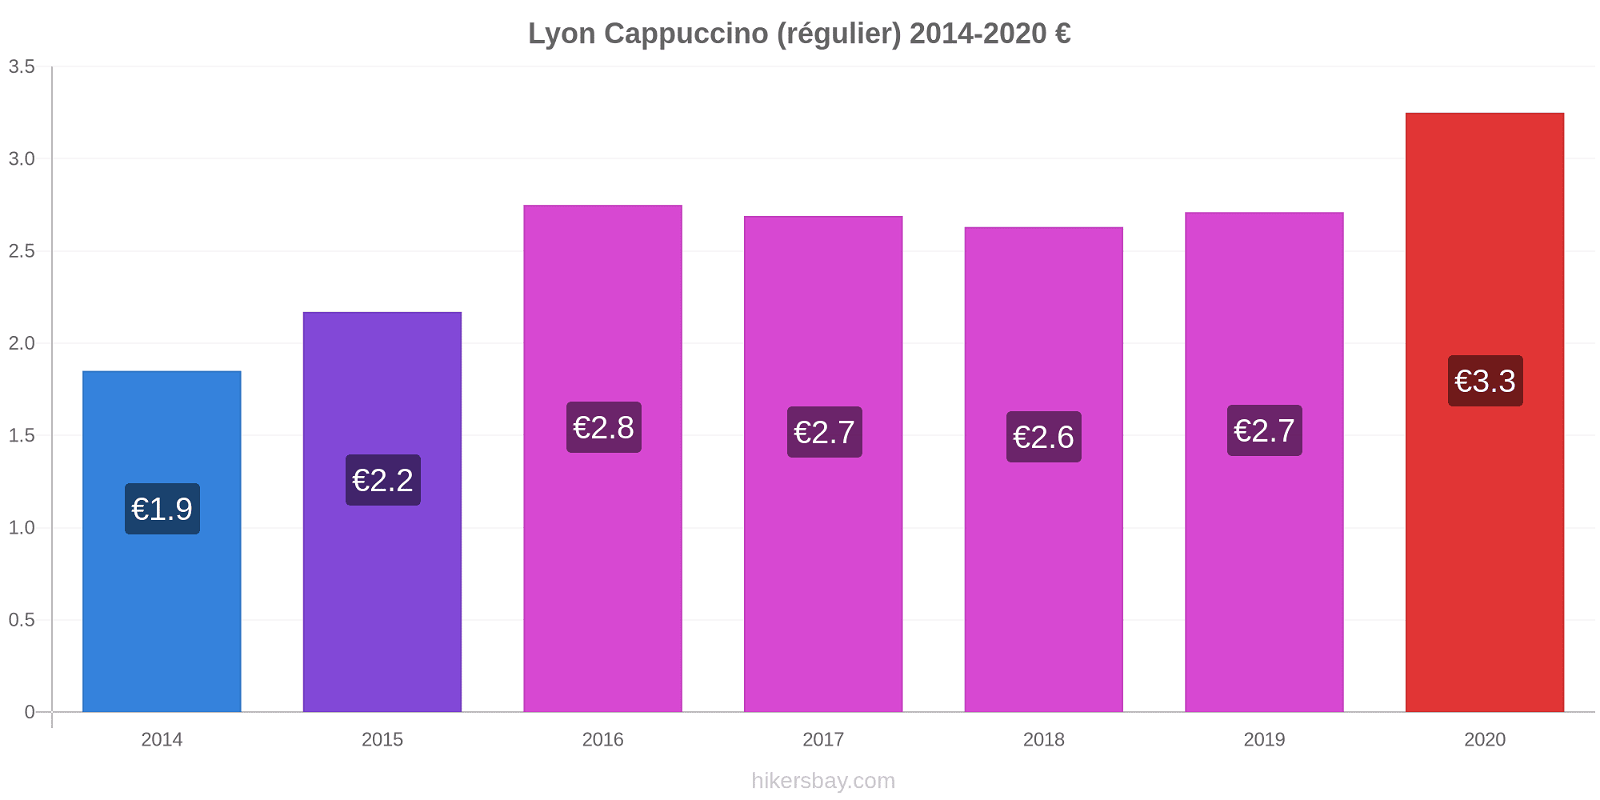 Lyon changements de prix Cappuccino (régulier) hikersbay.com